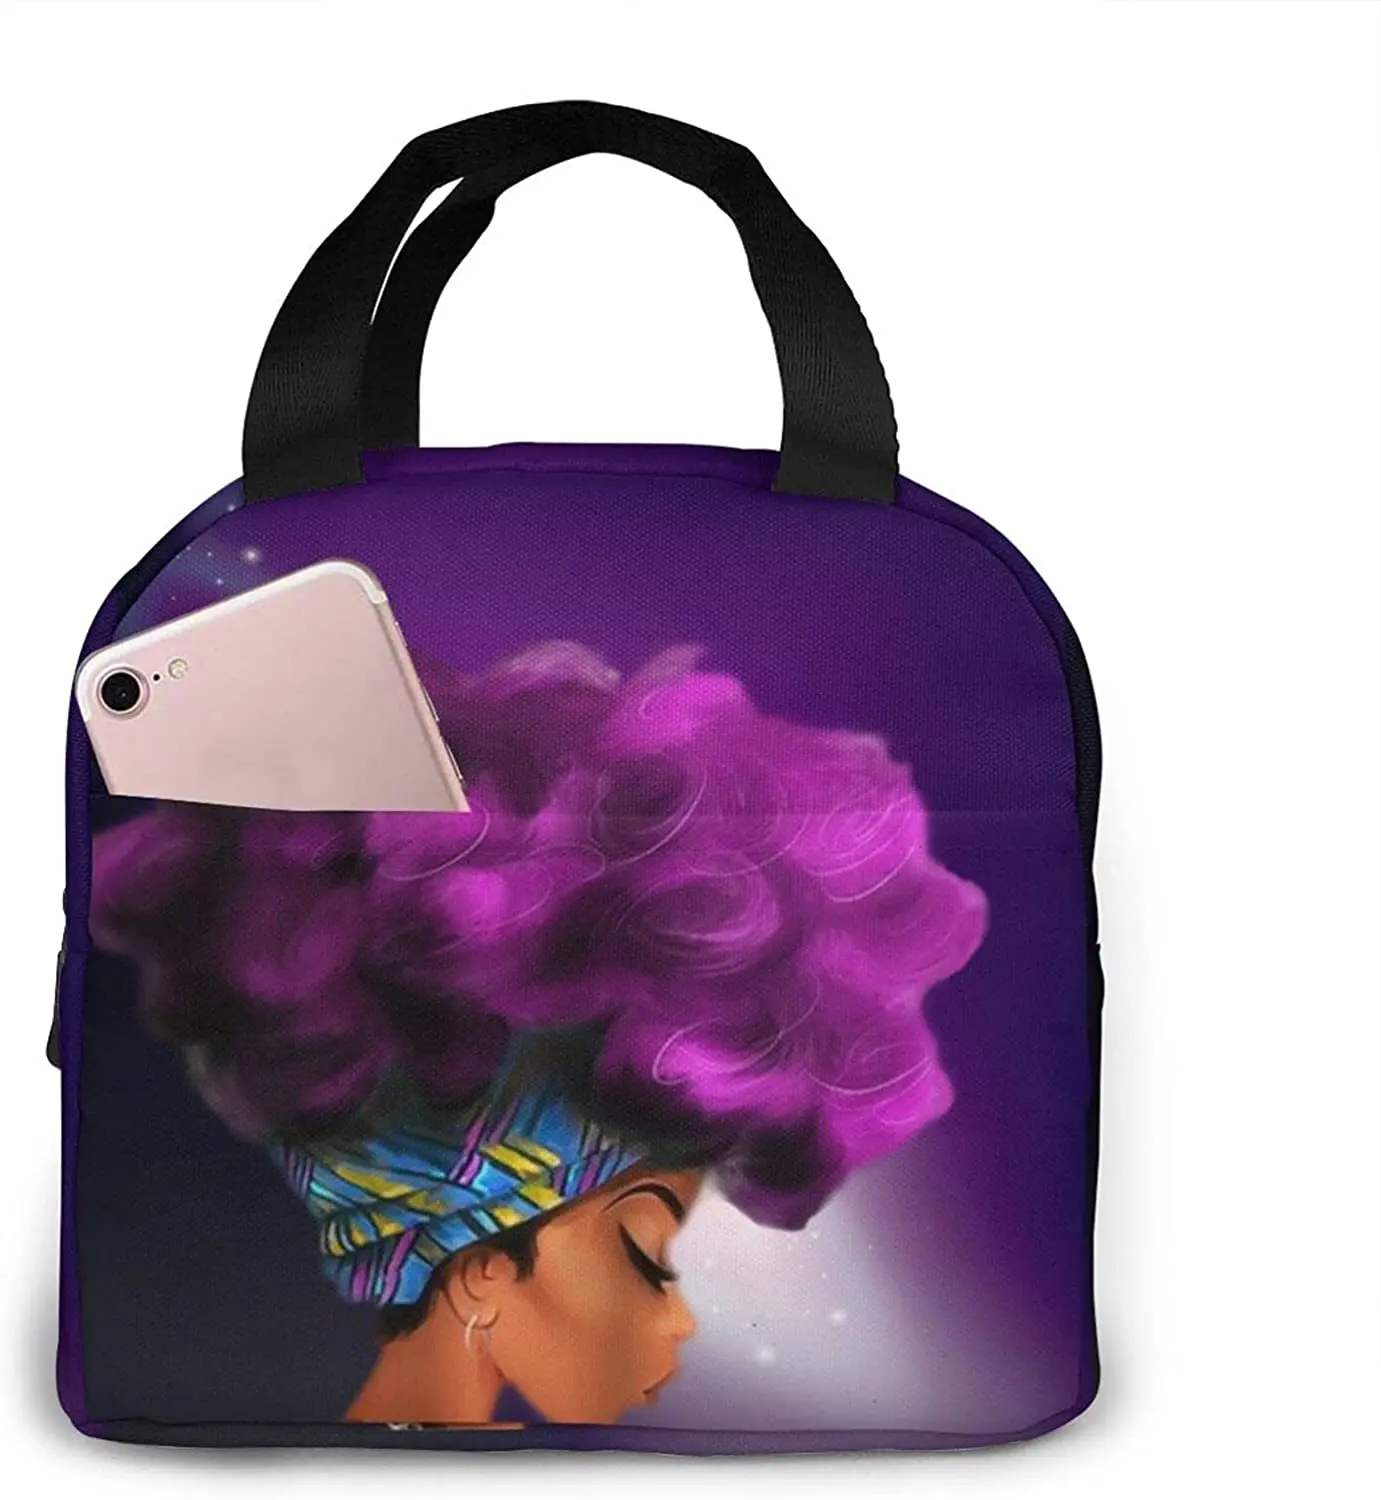 

Африканская американская Женская Звездная Галактика фон сумка для ланча Компактная сумка-тоут многоразовый Ланч-бокс контейнер для женщин и мужчин